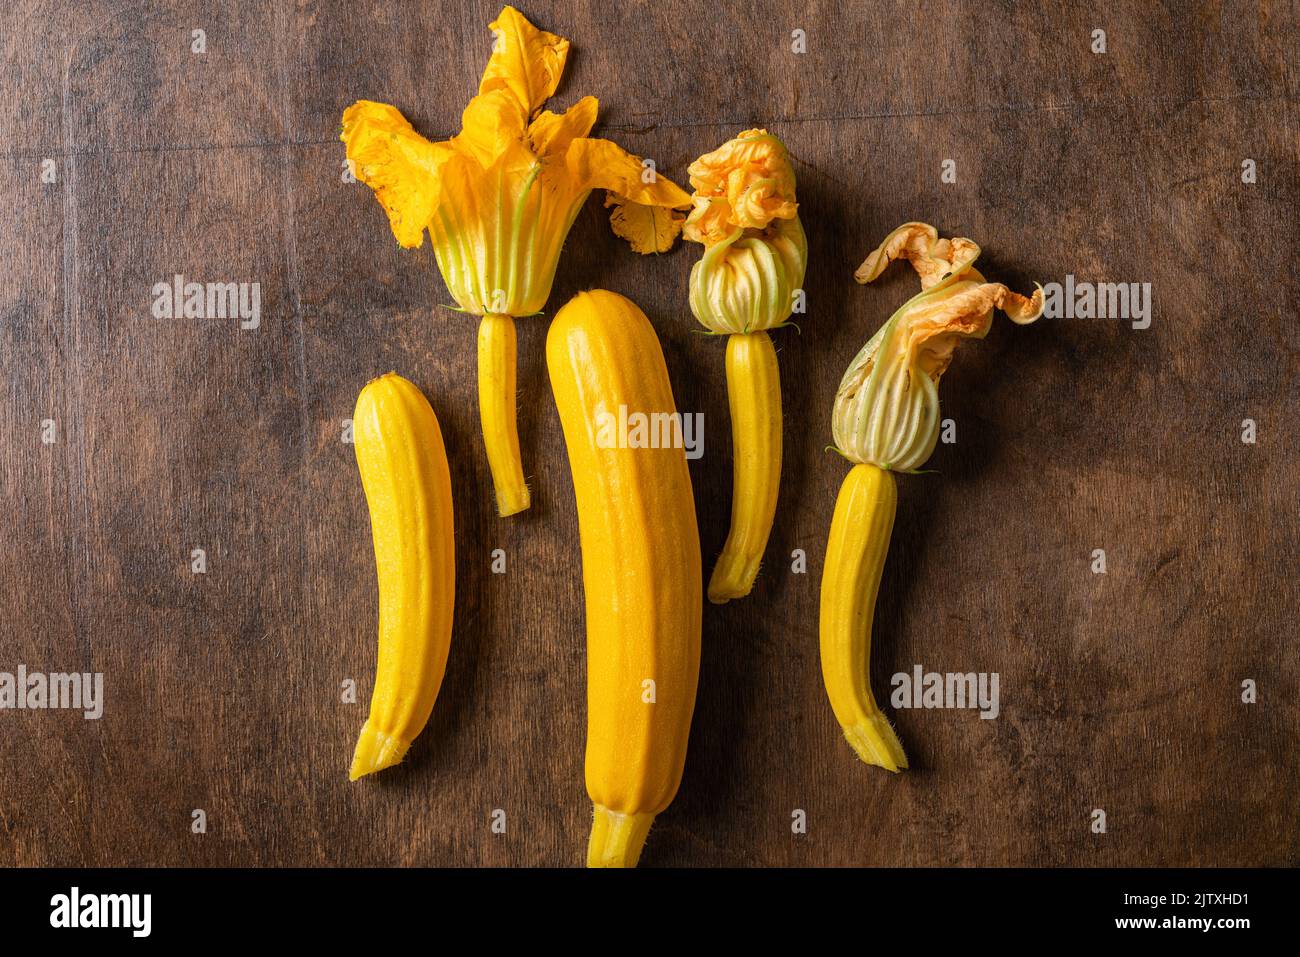 Frische gelbe Zucchini oder Squash mit Blumen auf Holzgrund. Draufsicht. Vegane Bio-Lebensmittel. Frisch geerntetes Gemüse. Stockfoto